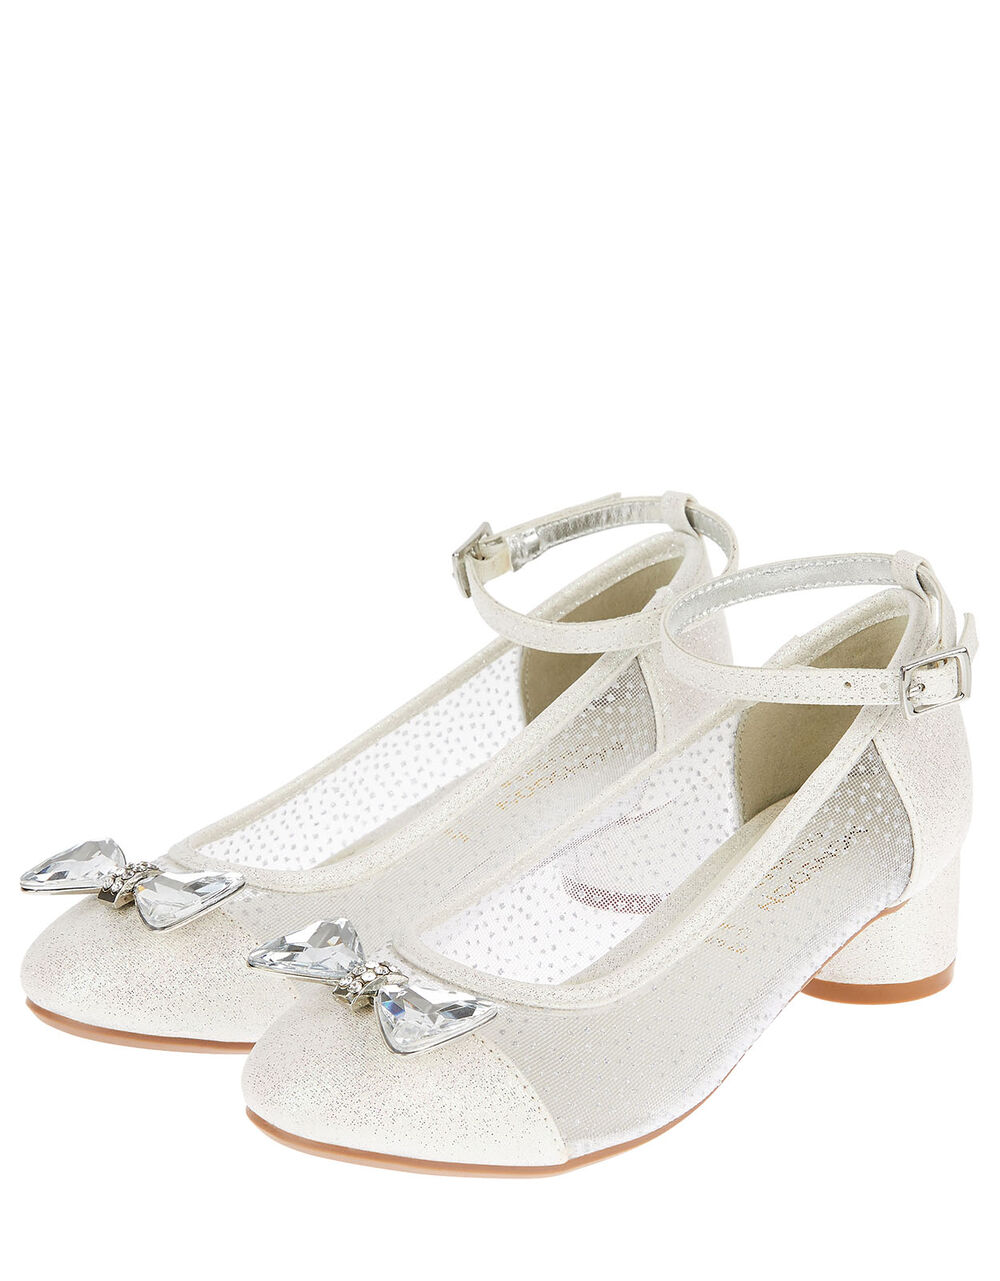 Children Children's Shoes & Sandals | Diamante Bow Princess Shoes Silver - OJ73664